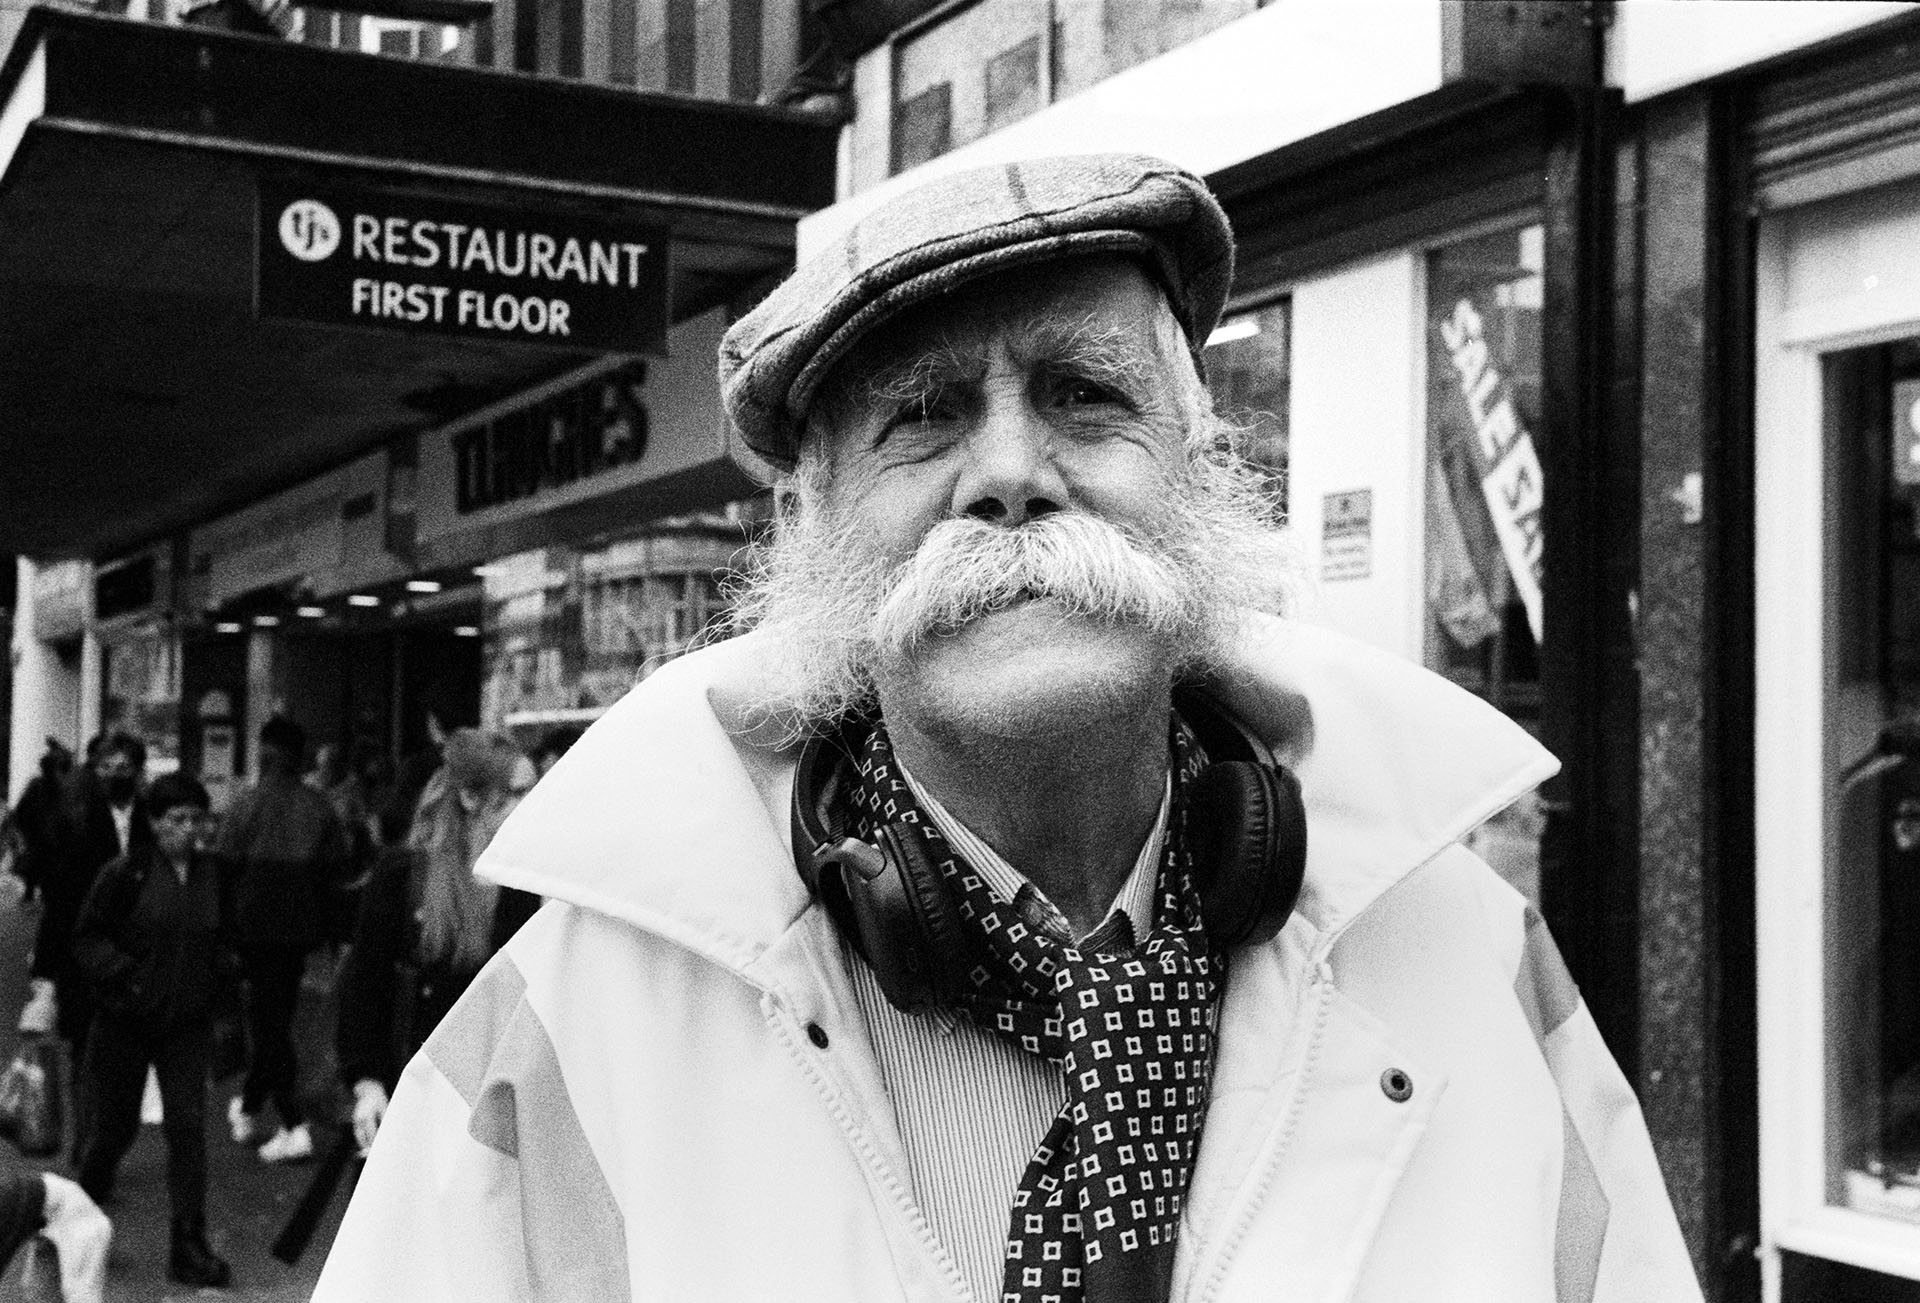 Glasgow 35mm street portrait